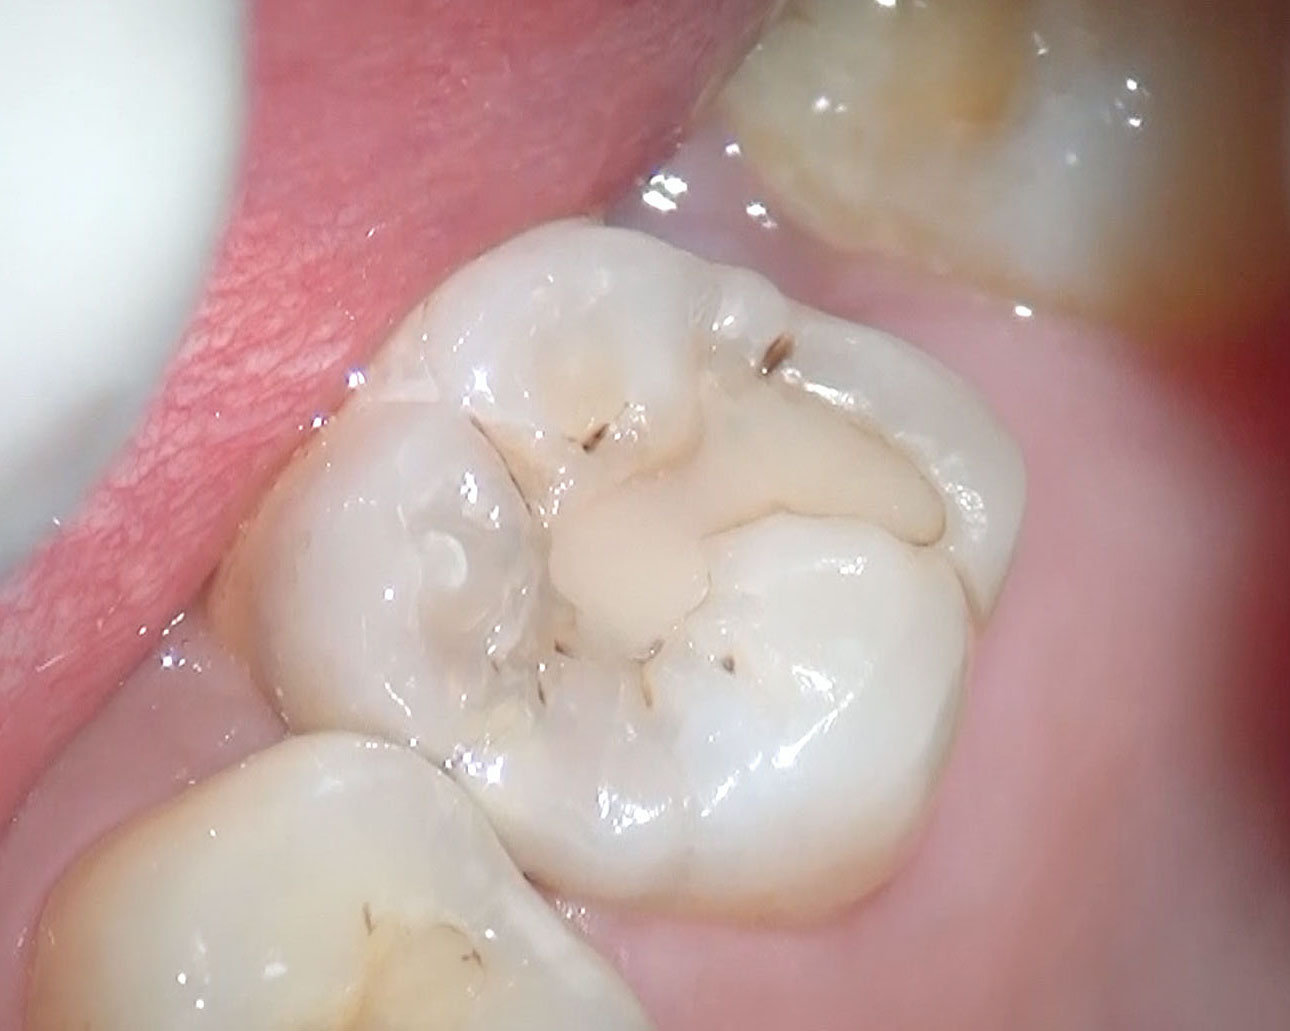 白い詰め物の下がむし歯になっていた 医療法人社団徹心会ハートフル歯科